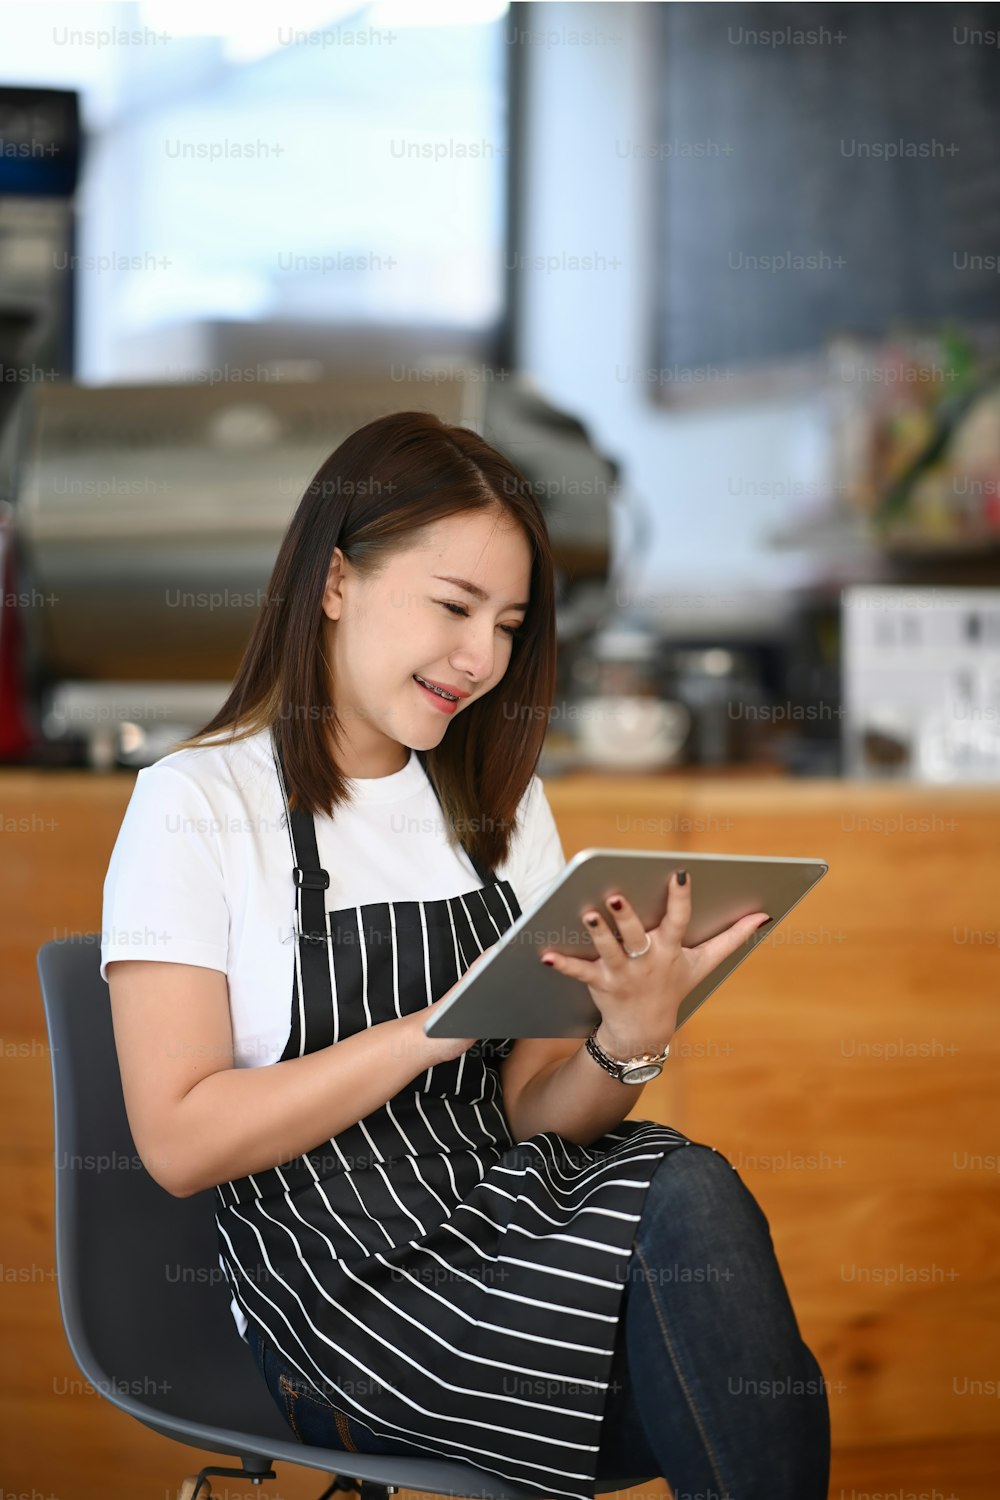 웃고 있는 젊은 기업가가 카페 카운터 앞에 앉아 디지털 태블릿을 사용하고 있다.